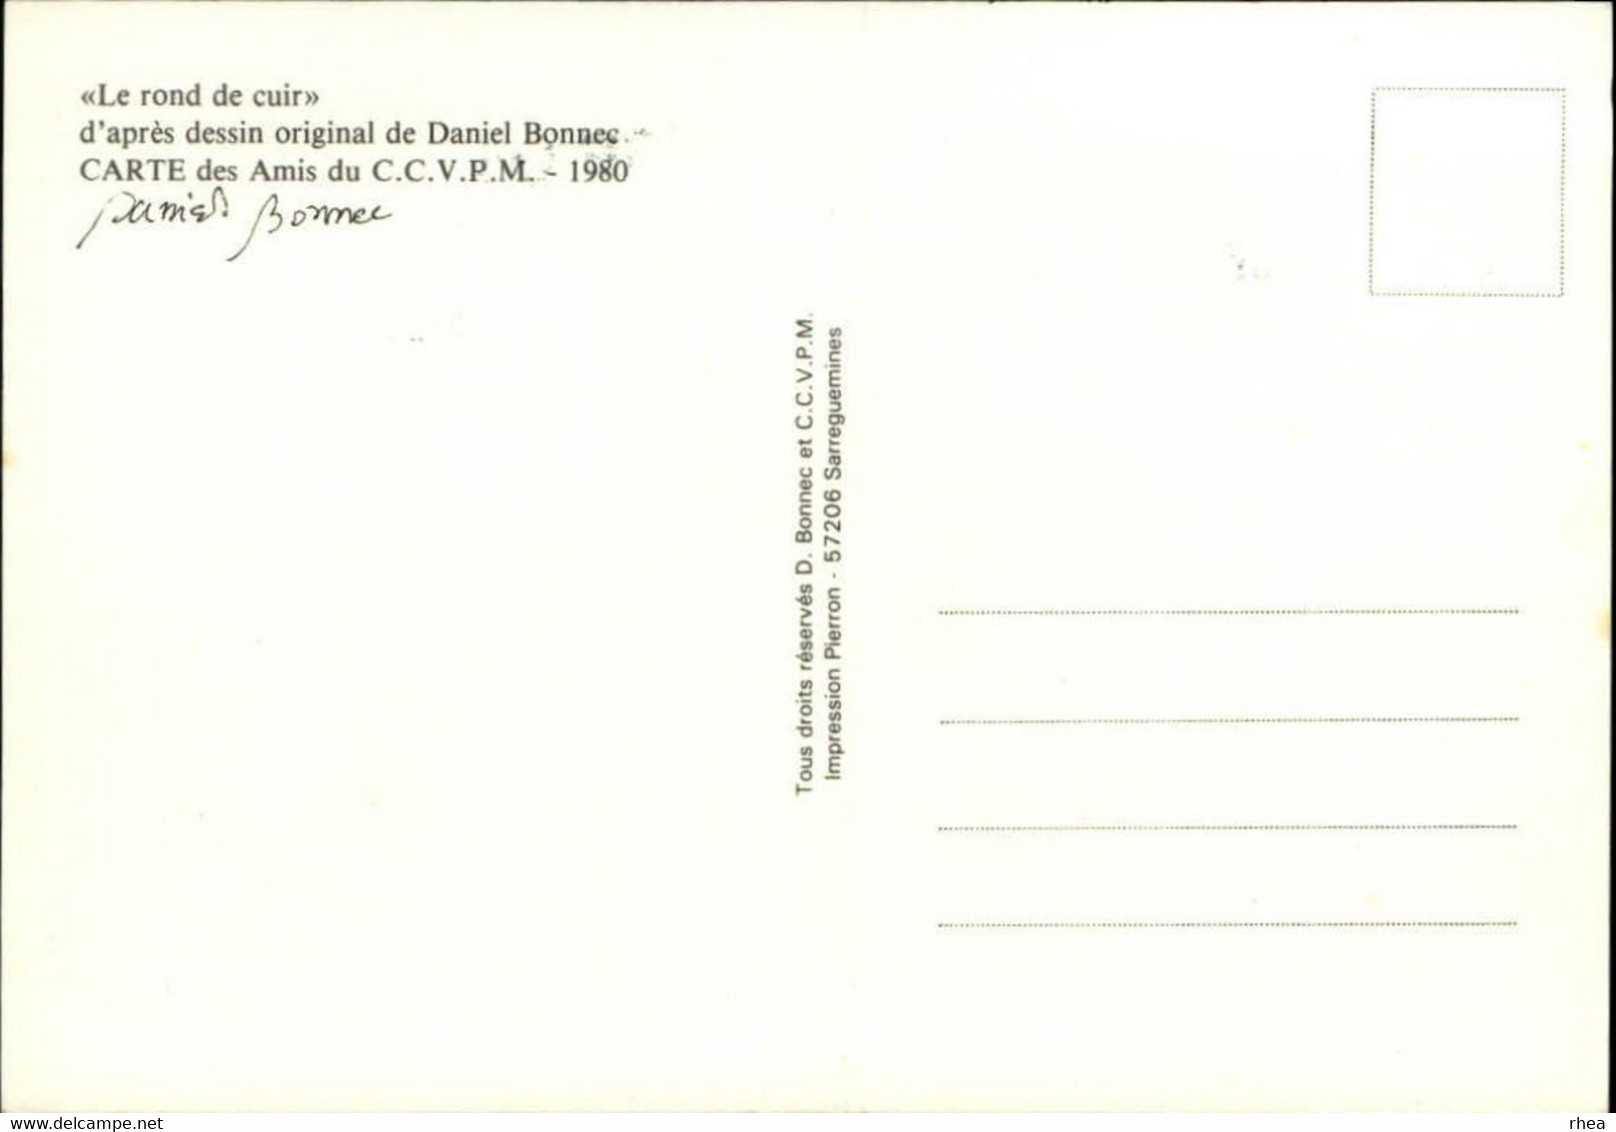 SALONS DE COLLECTIONS - Salon De Cartes Postales - Le Rond De Cuir - Dessin De Daniel Bonnec - 1980 - Bourses & Salons De Collections